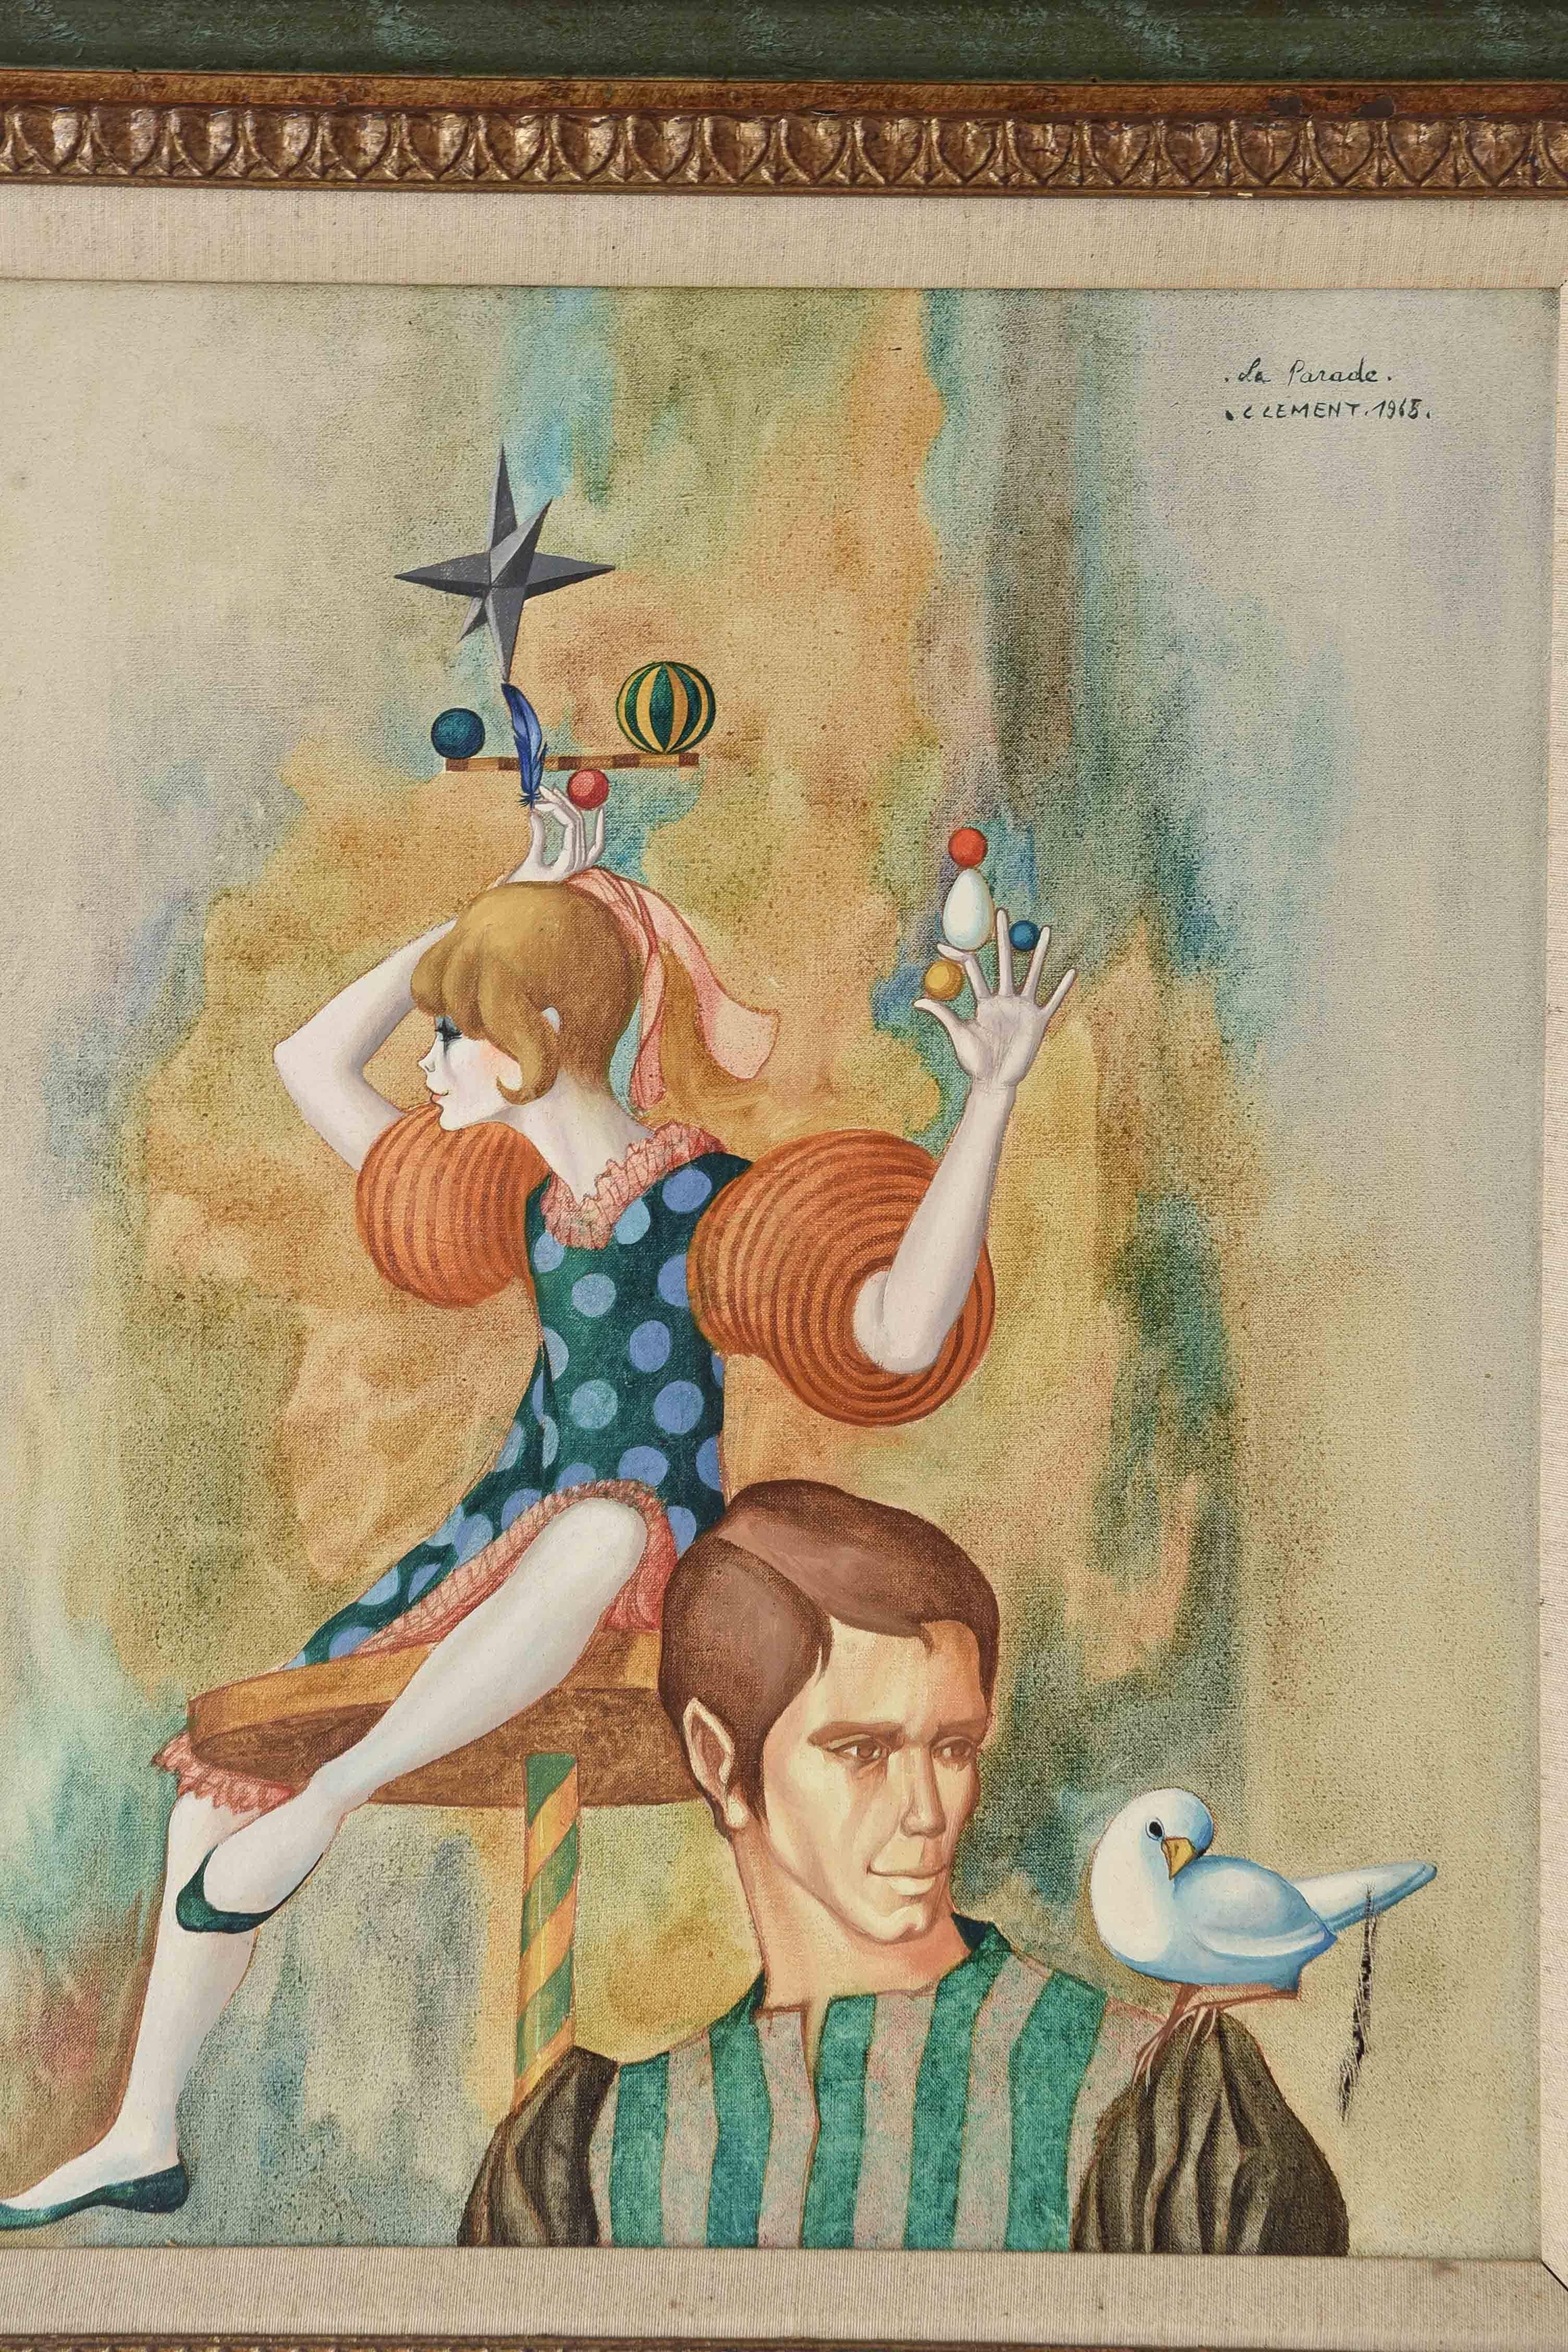 Une peinture surréaliste de l'artiste français classé Jean Pierre Clement représentant deux figures fantaisistes. Le personnage masculin de devant porte une chemise rayée et une colombe blanche est perchée sur son épaule. La jeune fille à l'arrière